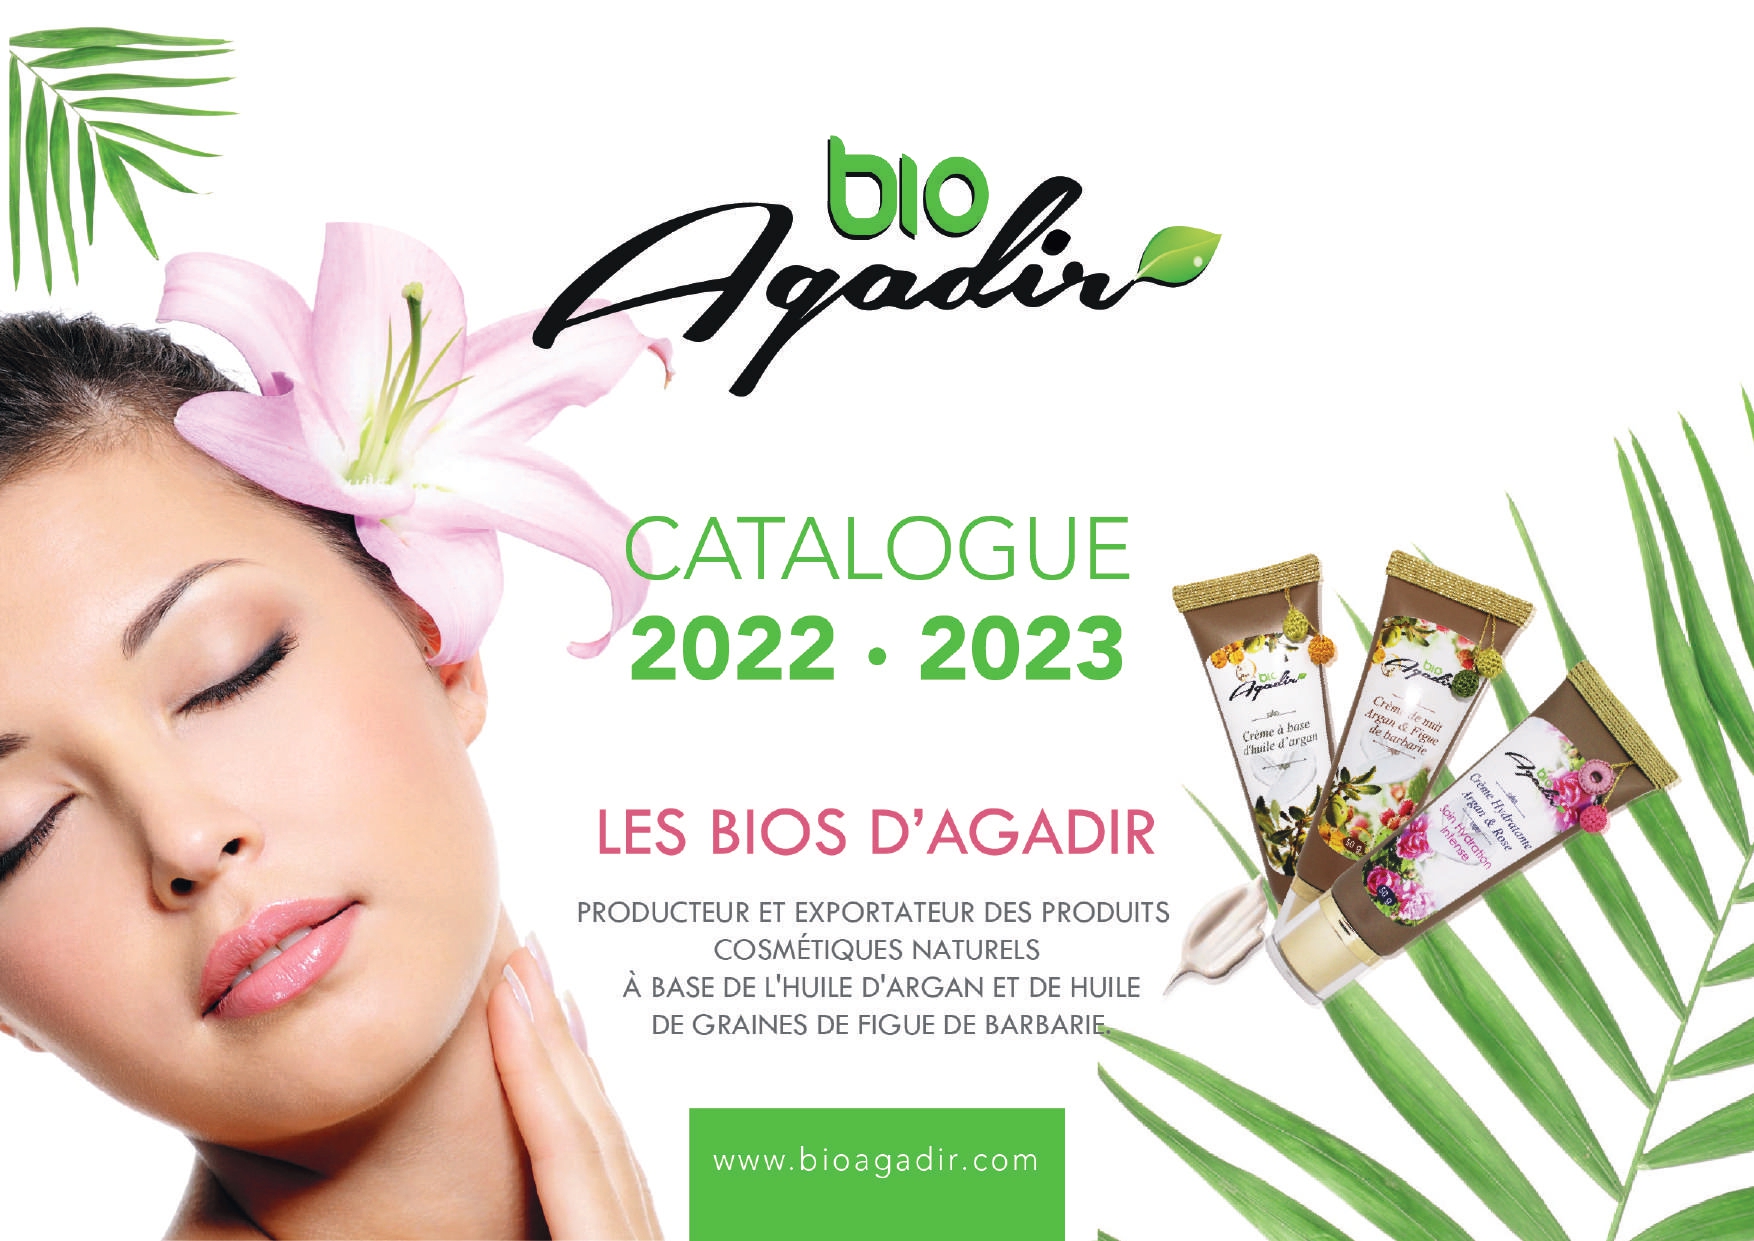 Les bios d'agadir, Catalogue des produits cosmétique